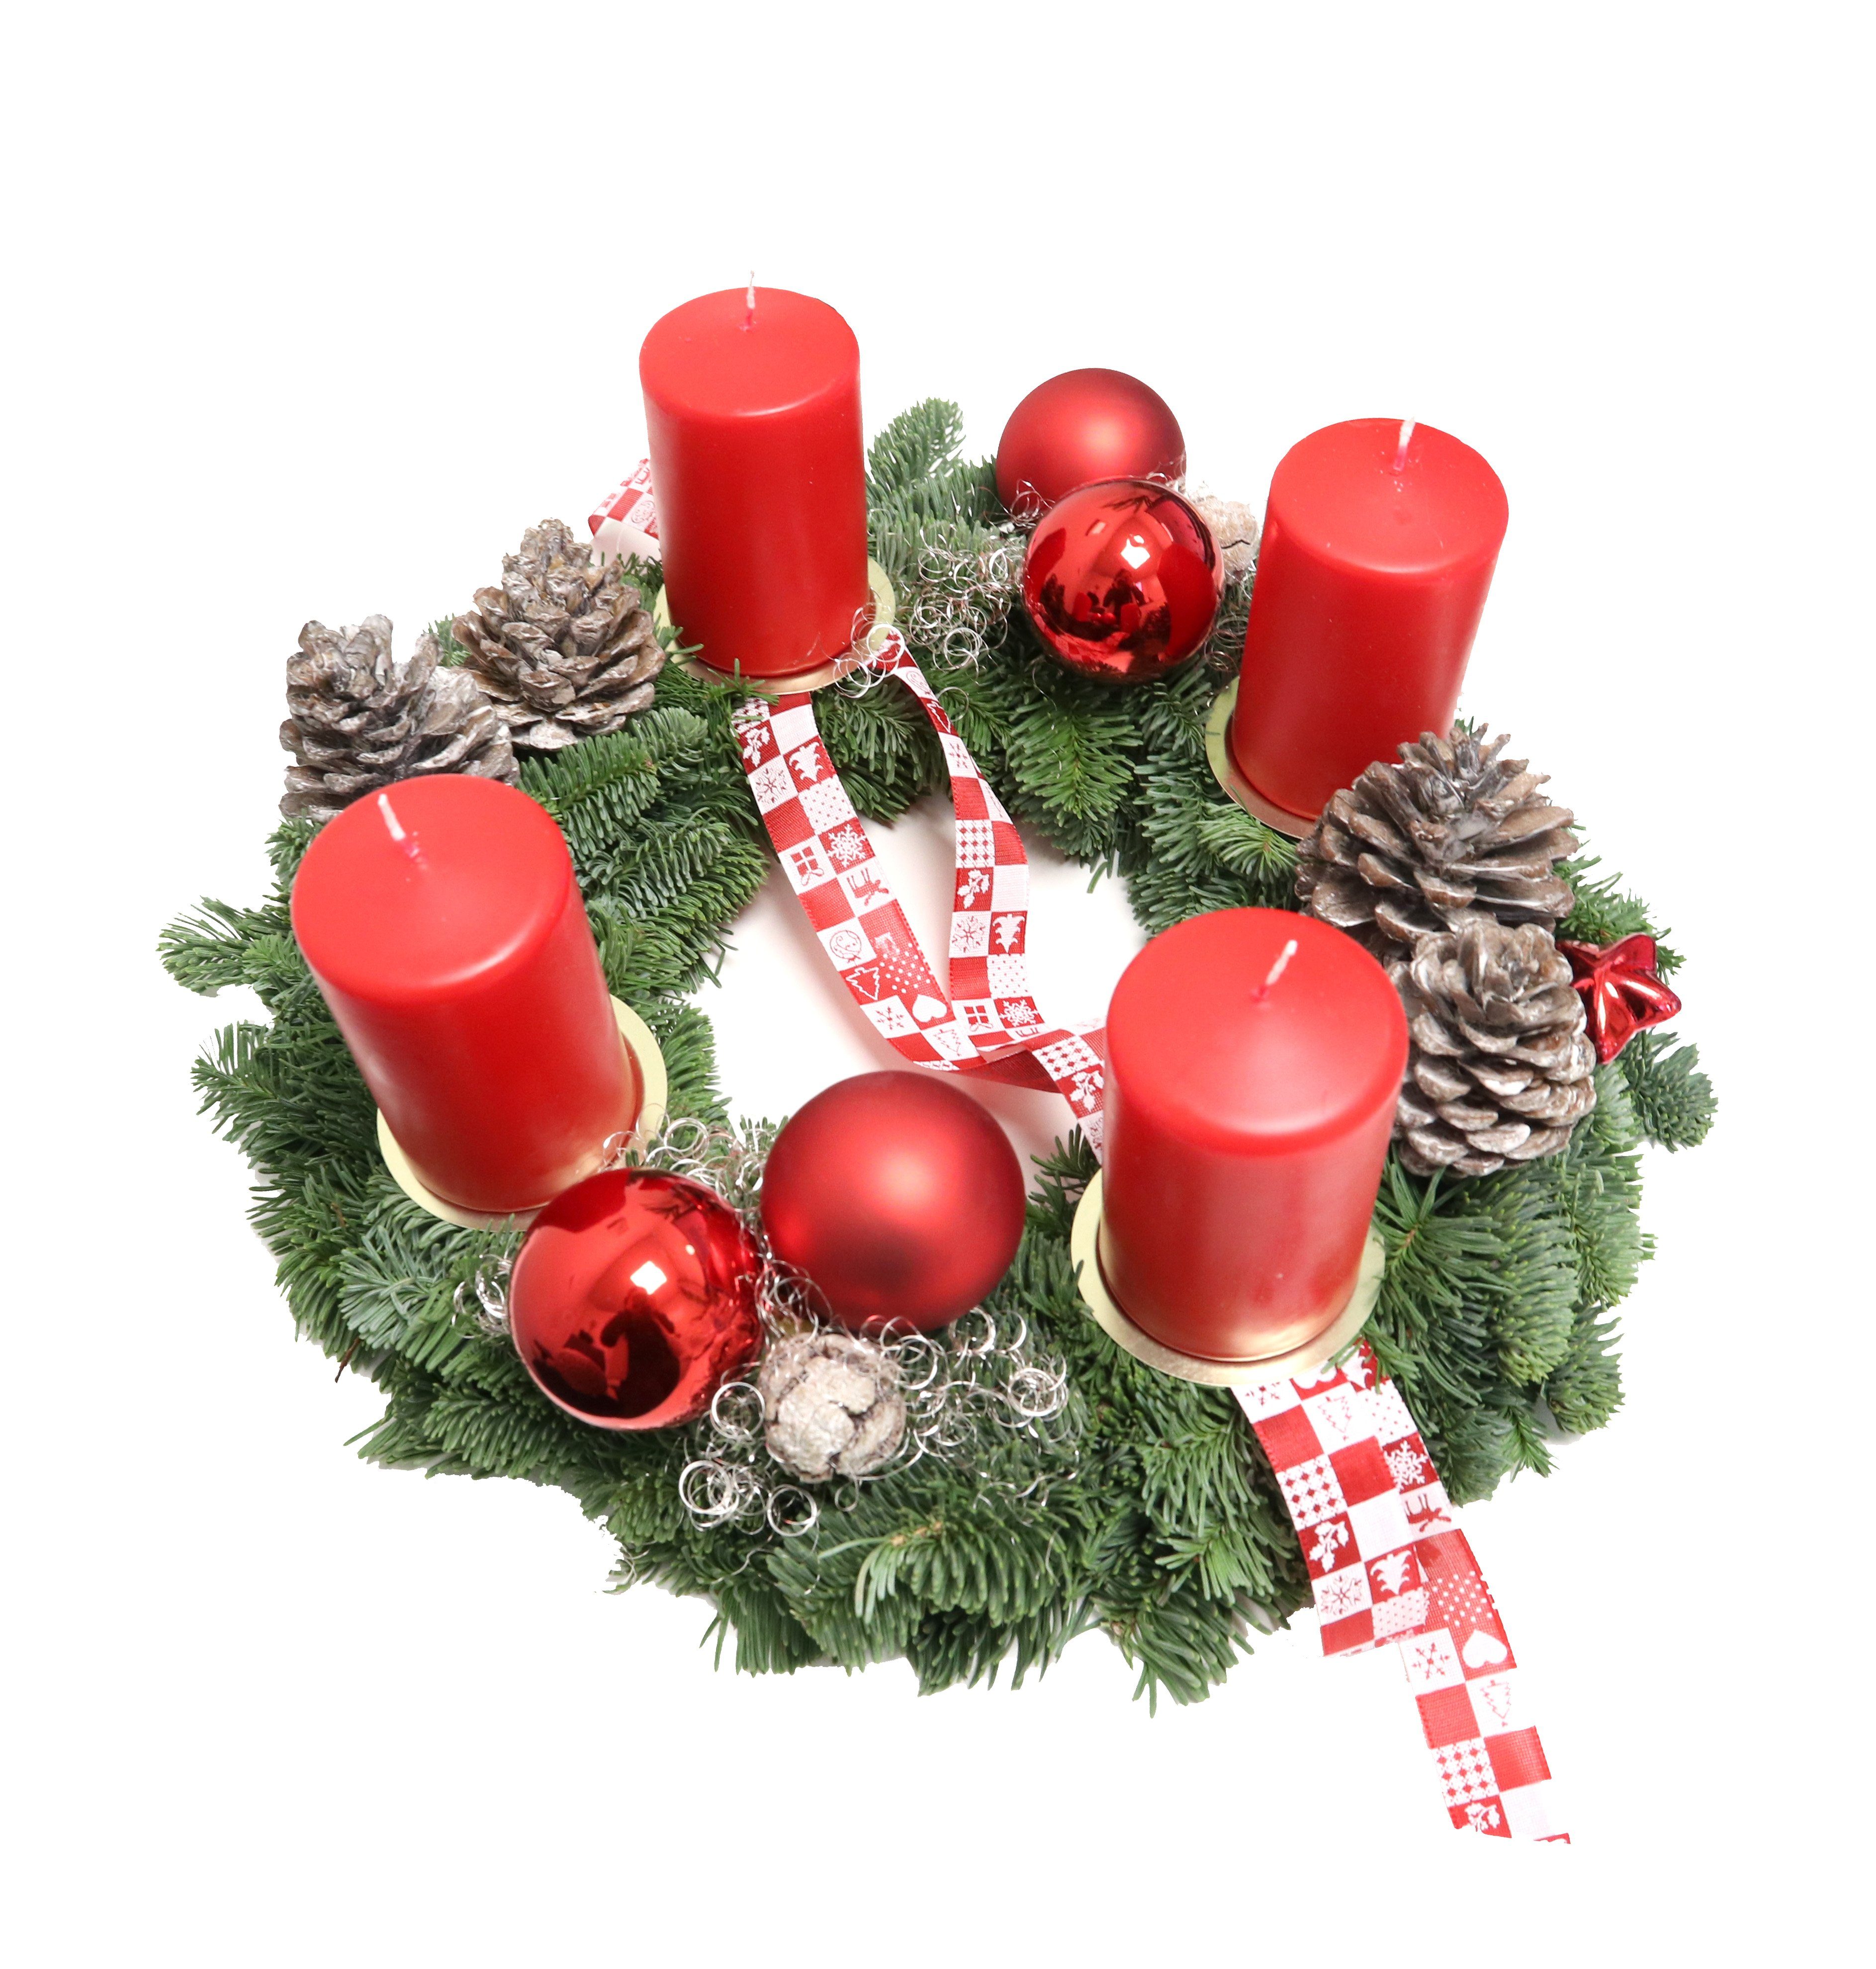 Gestecke »Adventskranz Kranz deko Adventsgesteck Weihnachtsdeko 724«,  PassionMade, Mit frische Tannenzweigen aus Deutschland hergestellt